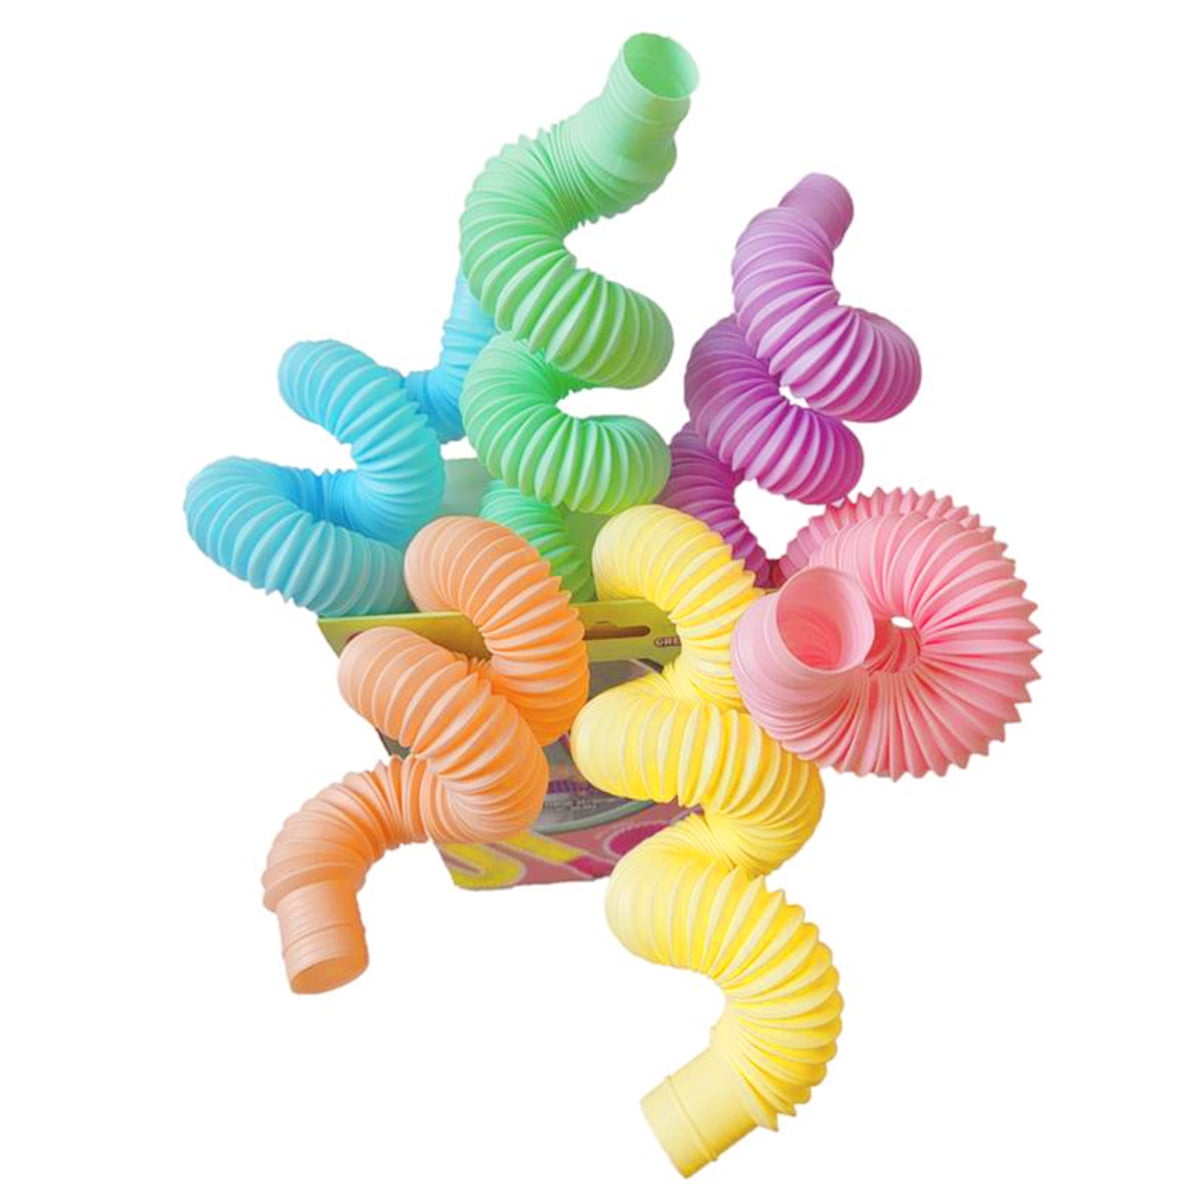 Retrok 6pcs Pop Tube Toys for Kids and Adults Mini Pop Multi-Color